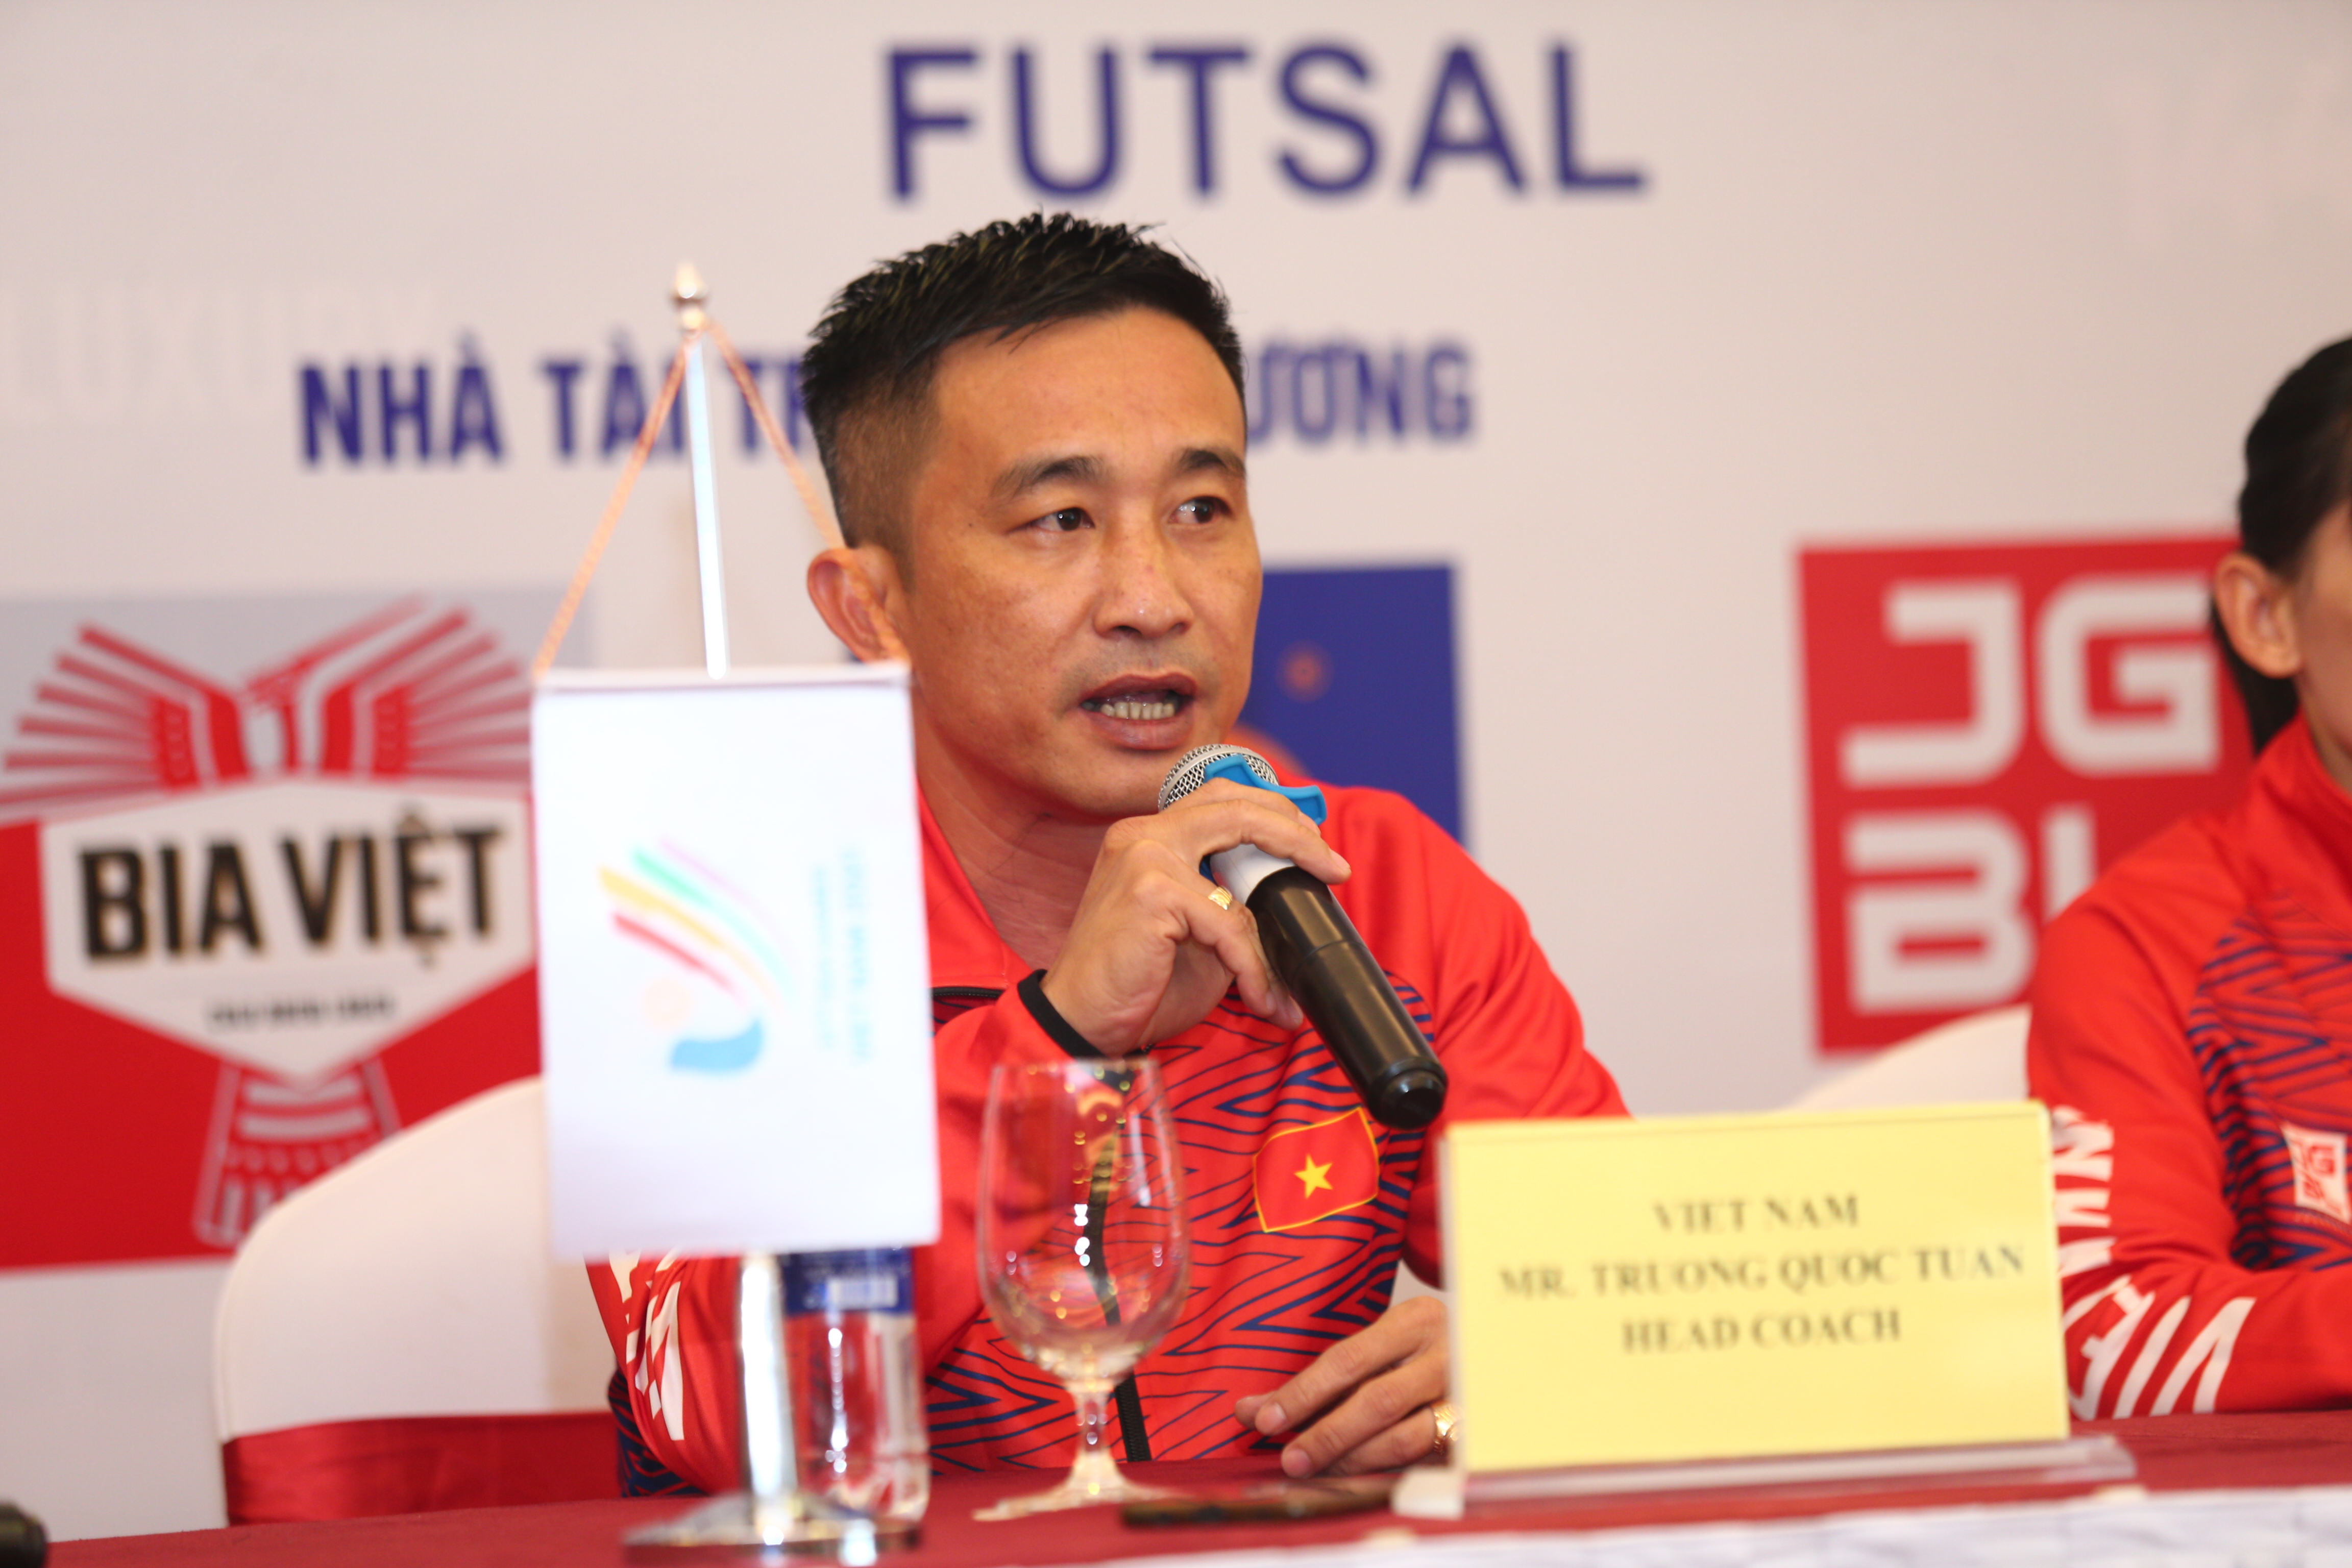 Đội tuyển Futsal Nữ Việt Nam và Malaysia: Đội tuyển Futsal Nữ Việt Nam được xem là đối thủ sừng sỏ của đội tuyển Malaysia trong các giải đấu trong nước. Tuy nhiên, trong các giải đấu quốc tế, cả hai đội đều cho thấy một sự phát triển tích cực và sự cạnh tranh rất khốc liệt. Đặc biệt, các trận đấu giữa hai đội luôn mang đến những bất ngờ thú vị và kịch tính. Một lần nữa, đây chứng tỏ sức hấp dẫn của môn thể thao Futsal tại Việt Nam và Malaysia.